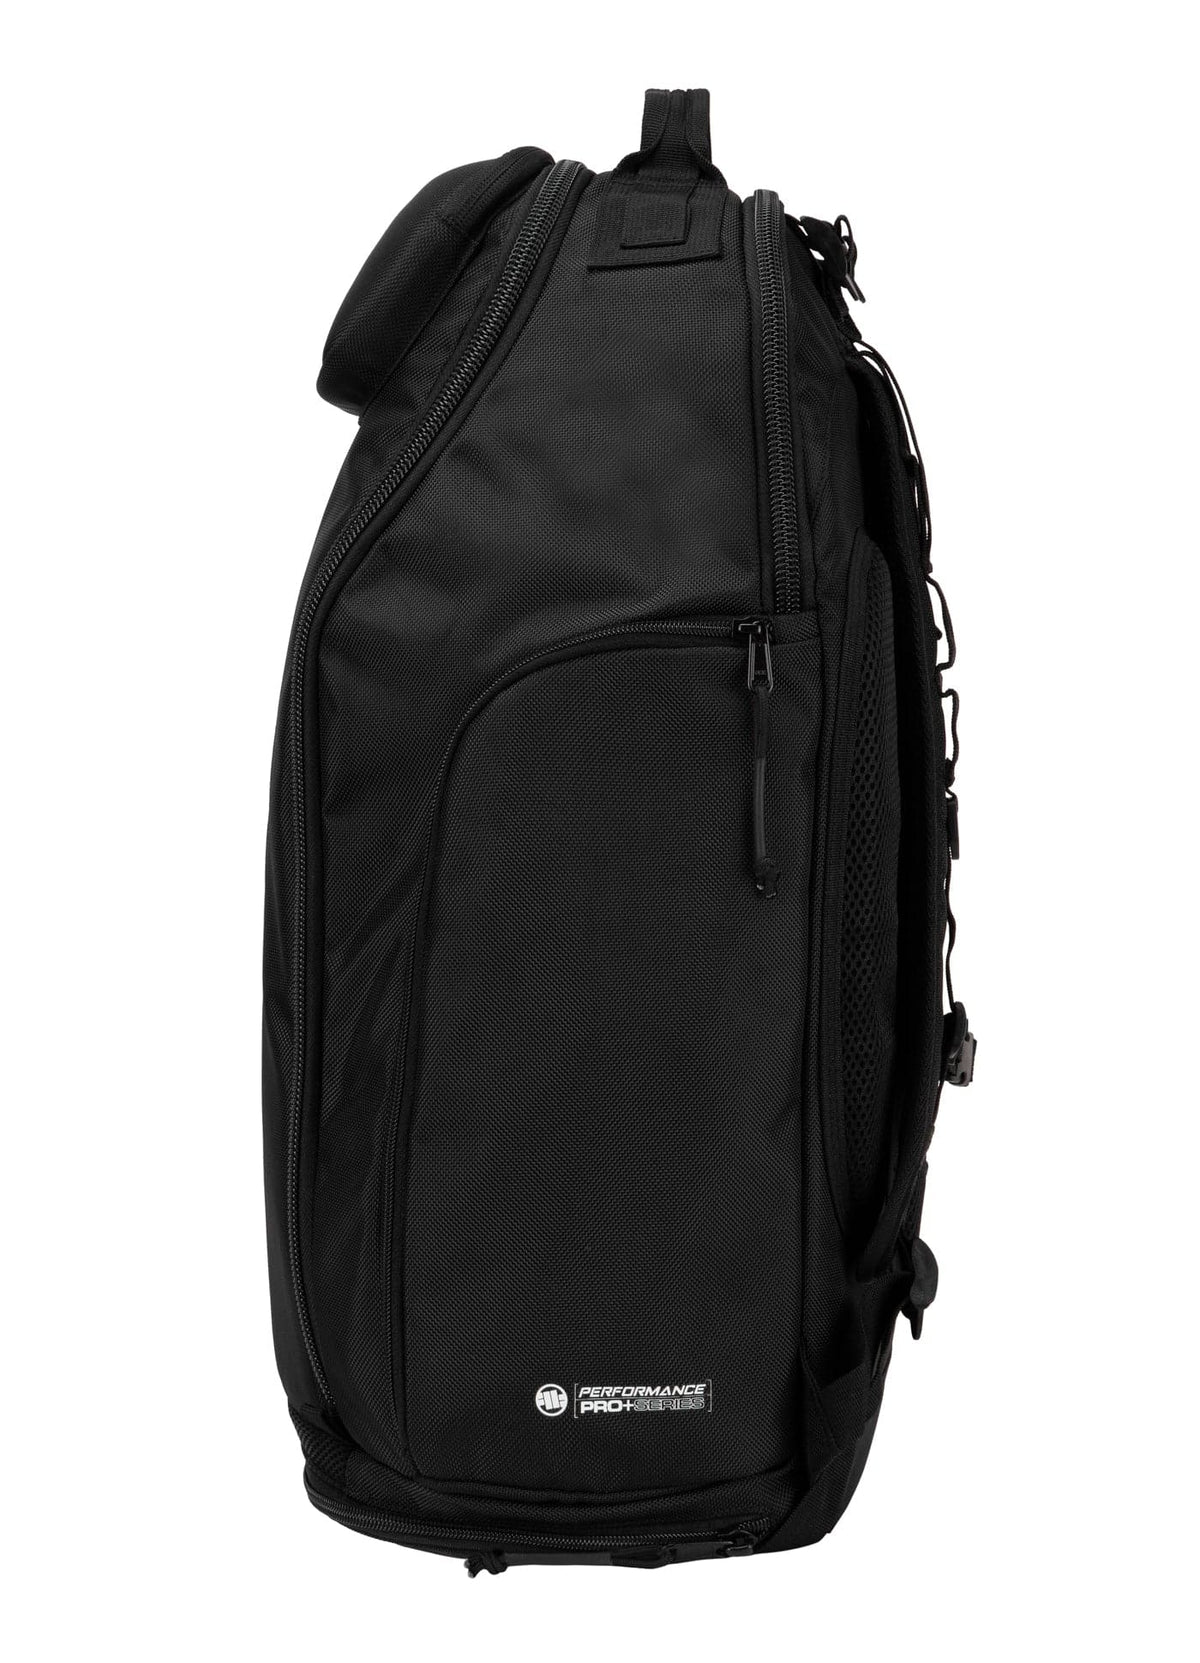 AIRWAY HILLTOP 2 Black Backpack